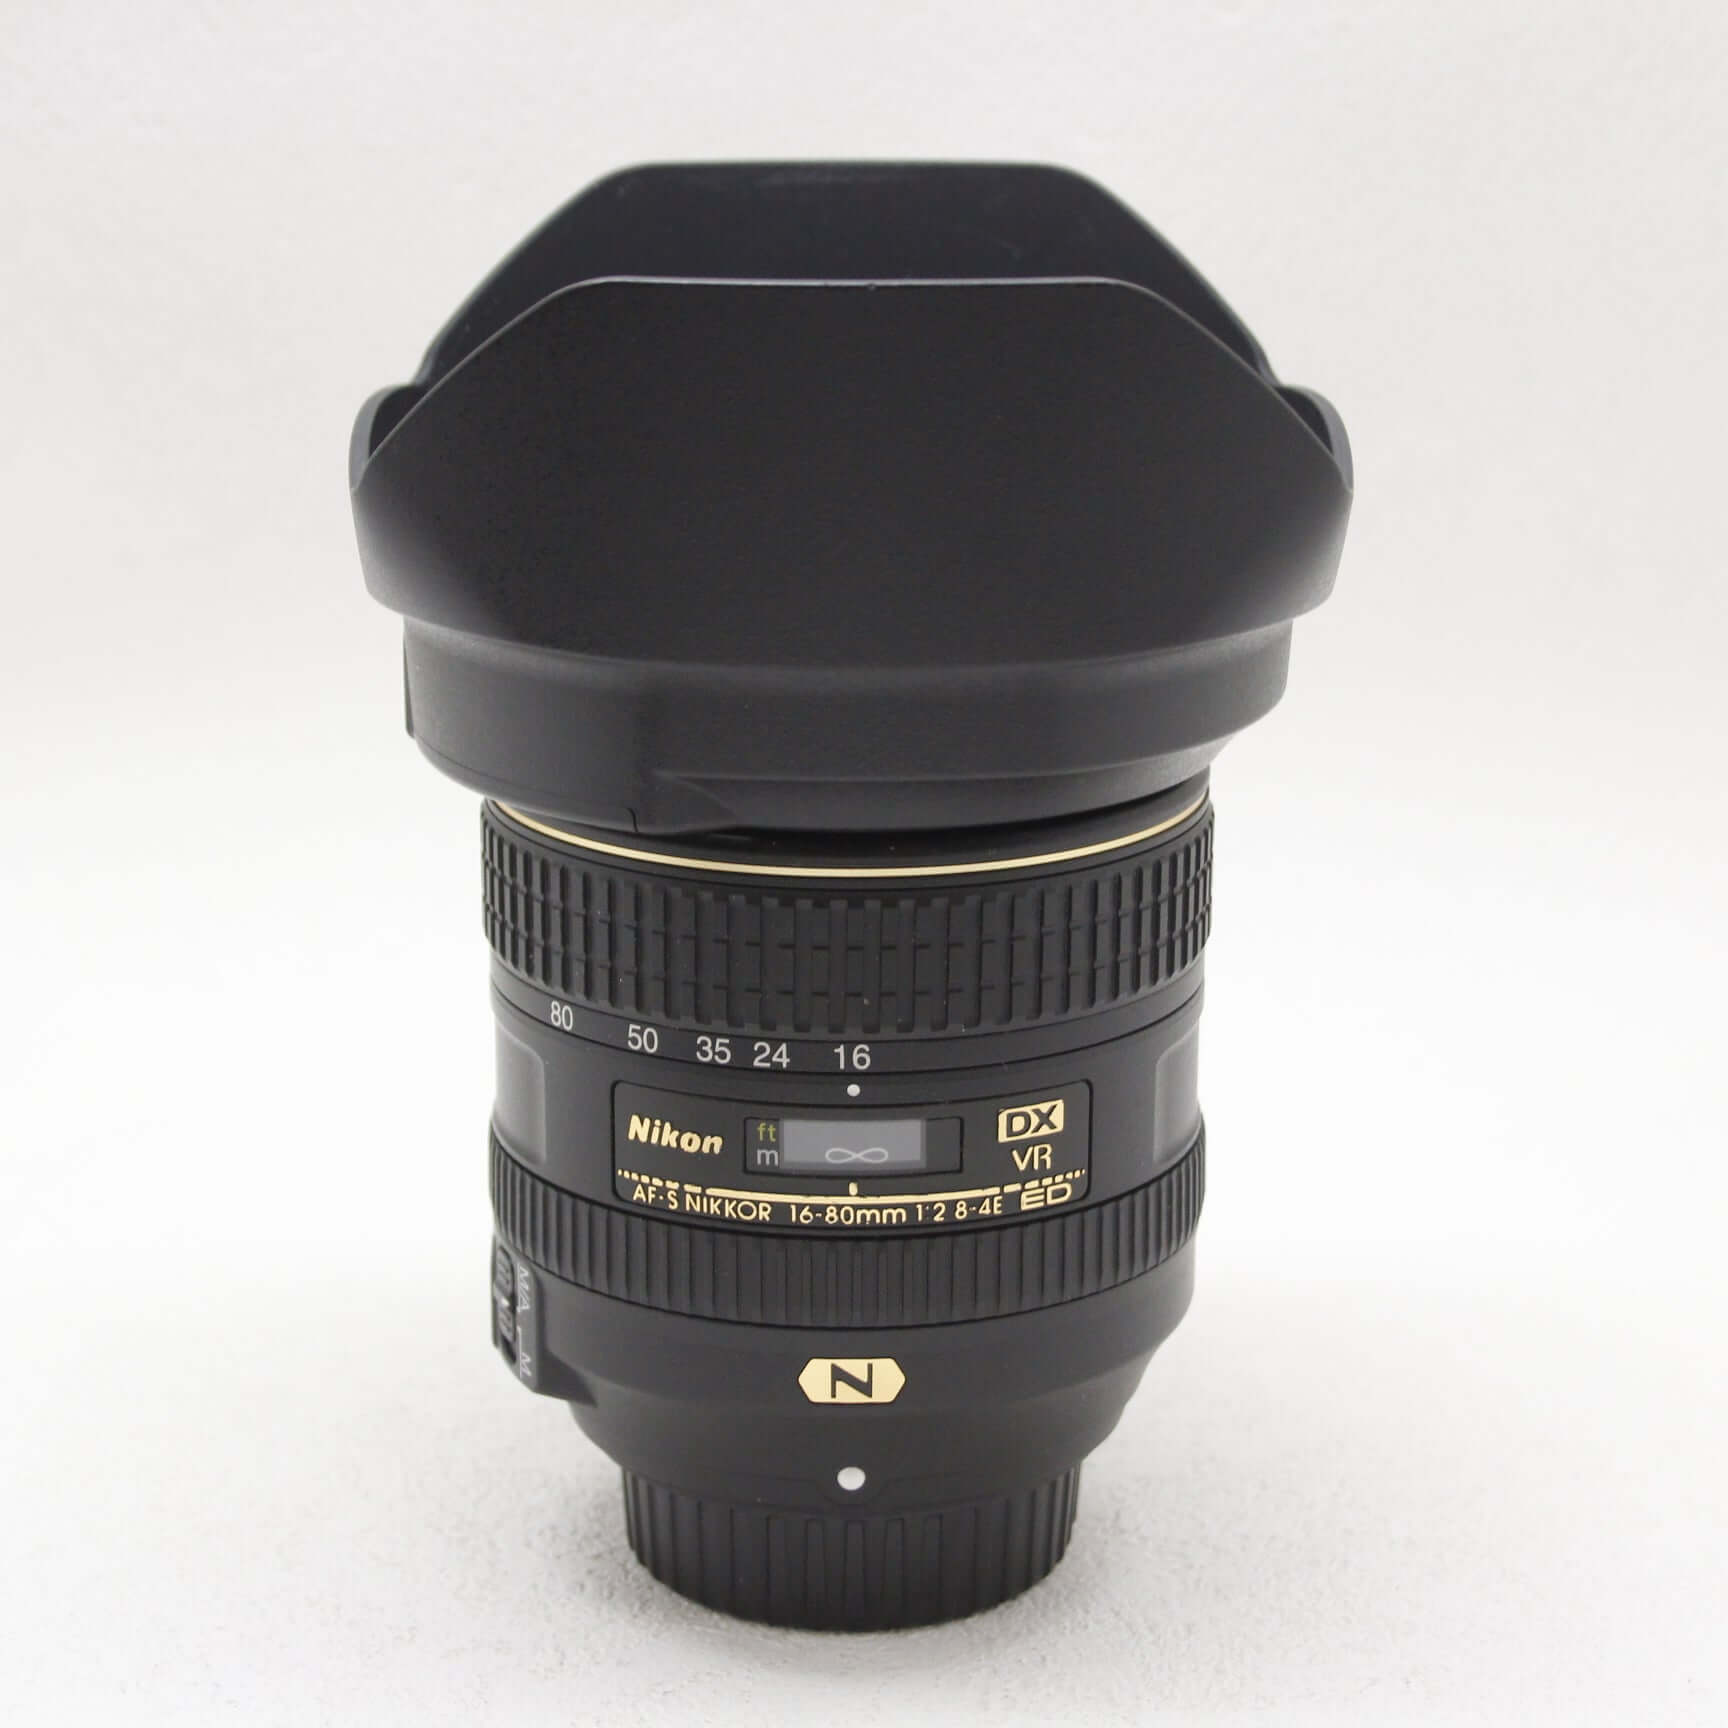 AF-S DX NIKKOR 16-80mm f/2.8-4E ED VRカメラ - レンズ(ズーム)